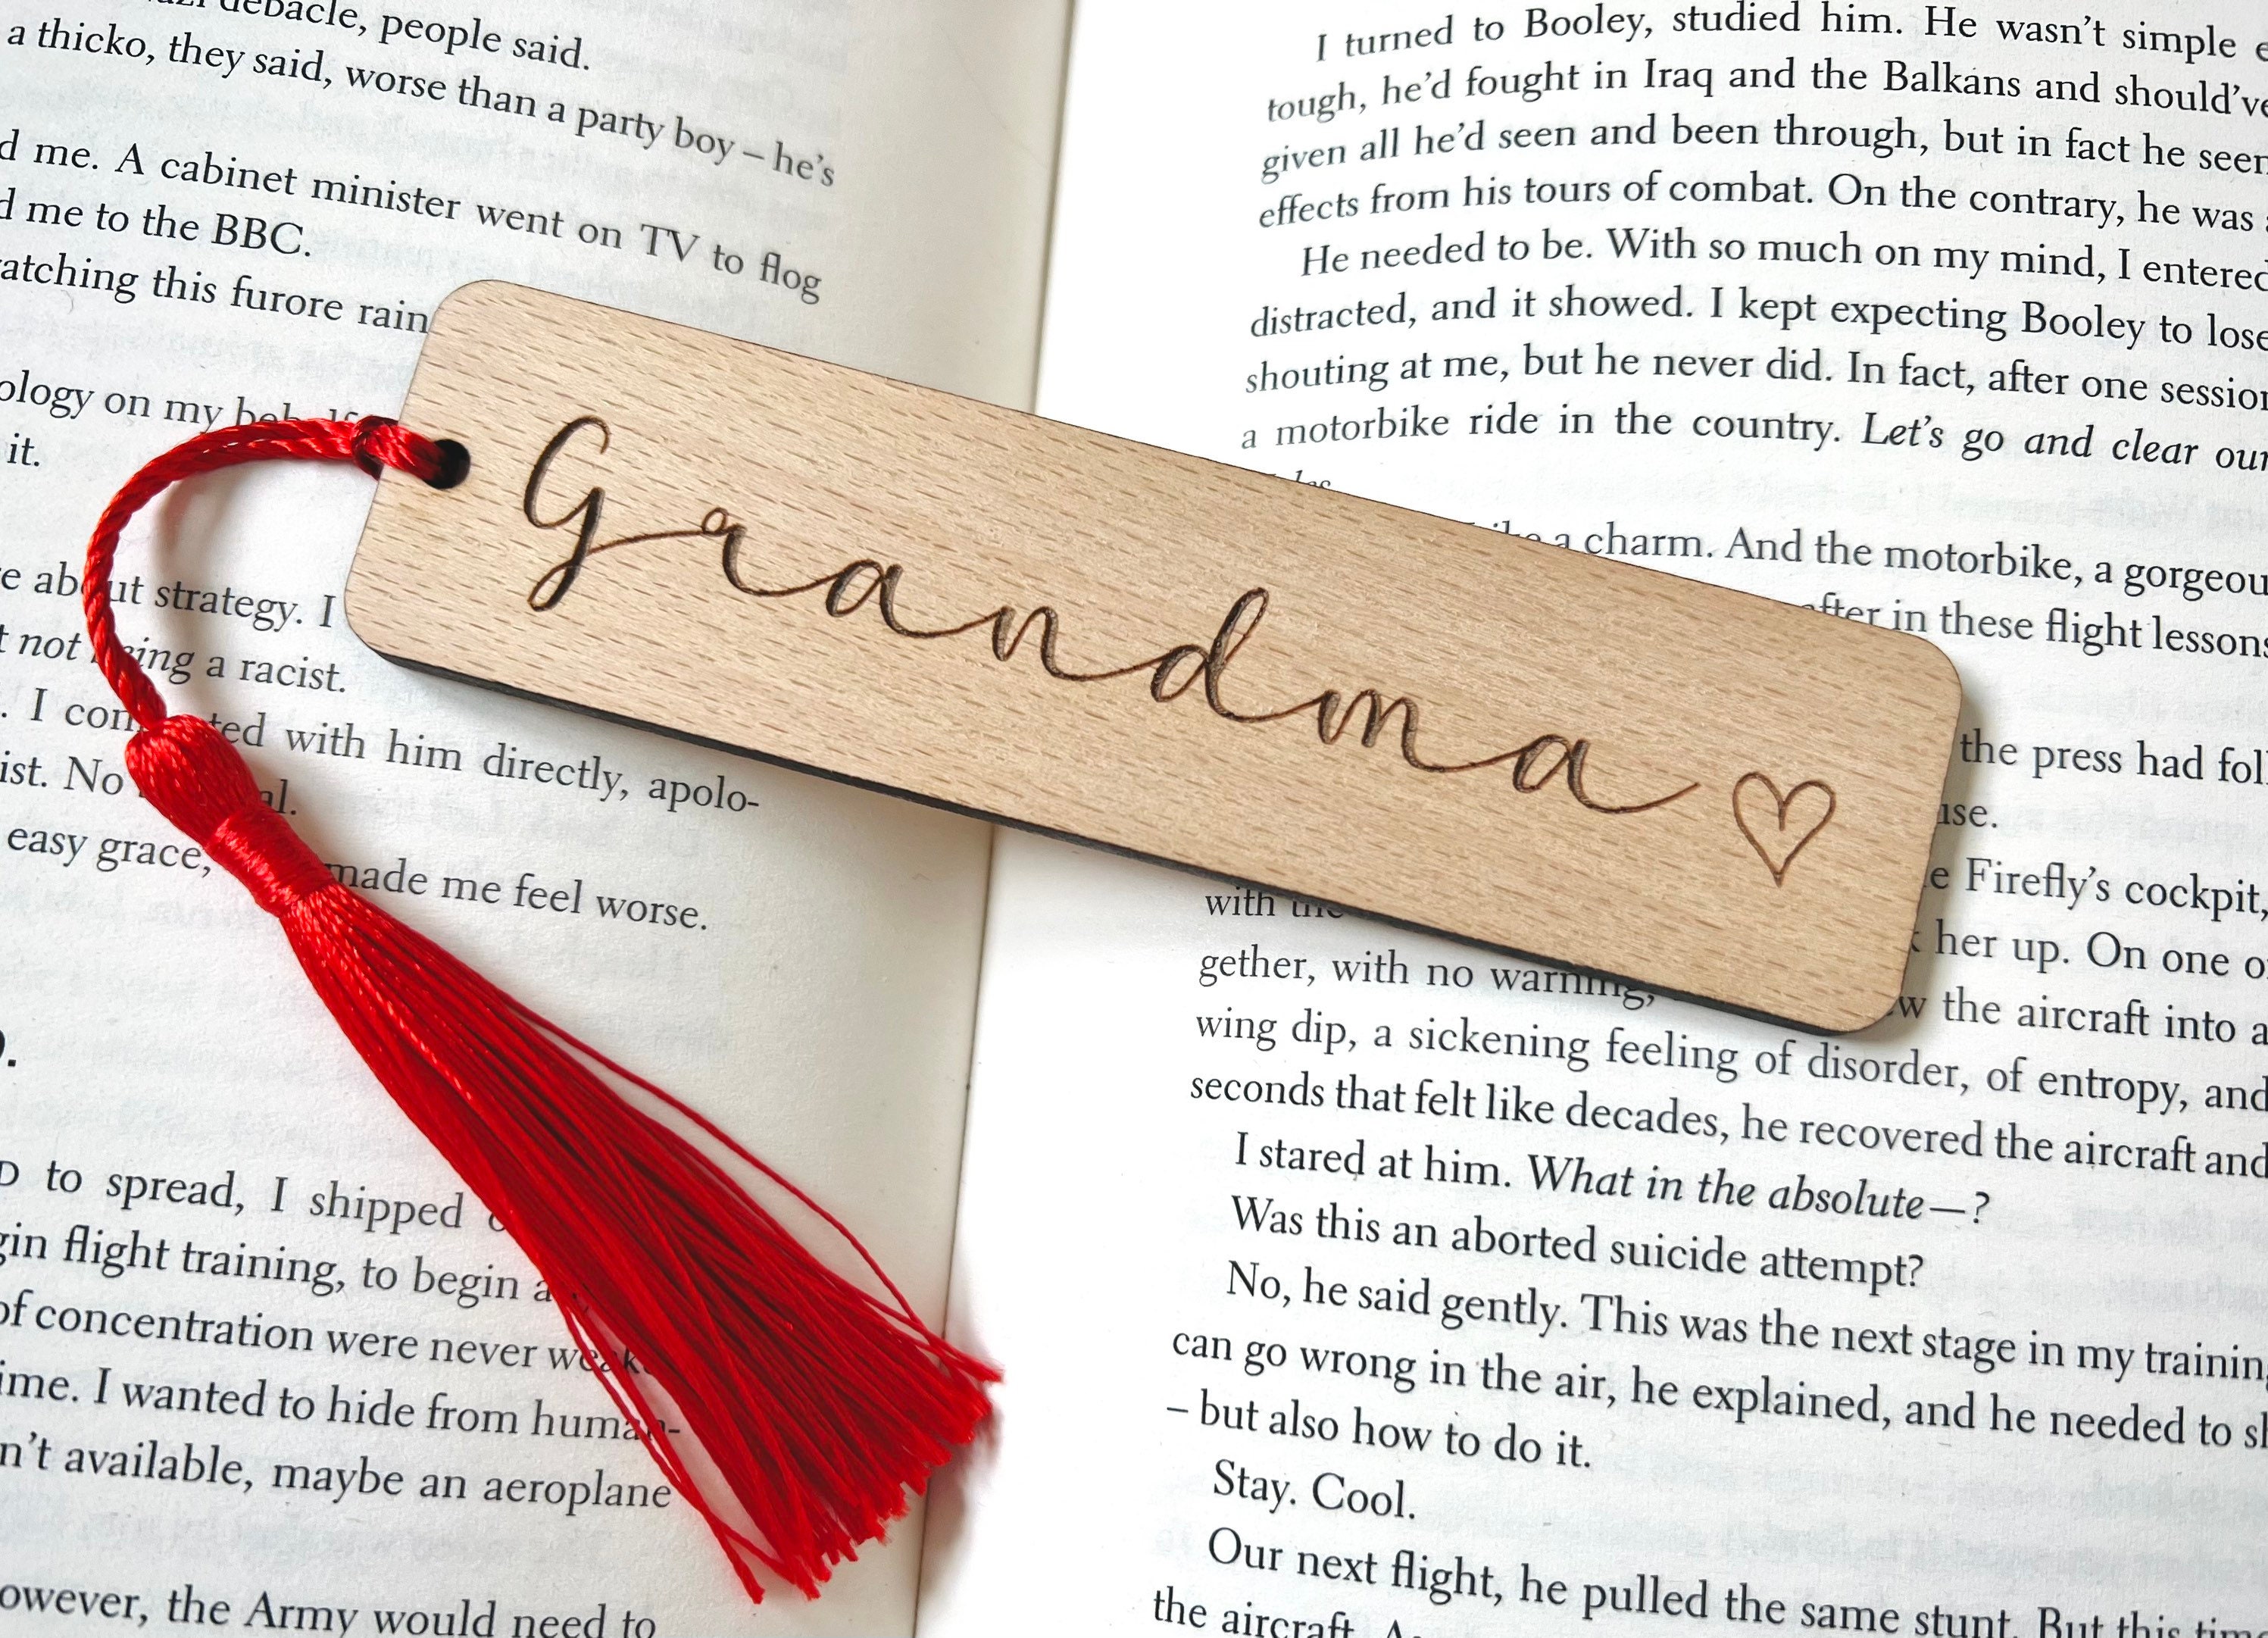  UNNESALT Grandma Gifts - Birthday Gifts for Grandma, Grandmother  - Christmas Gifts for Grandma from Grandkids, Granddaughter, Grandson - New Grandma  Gifts, Mothers Day Gift For Grandma 6pcs : Home & Kitchen